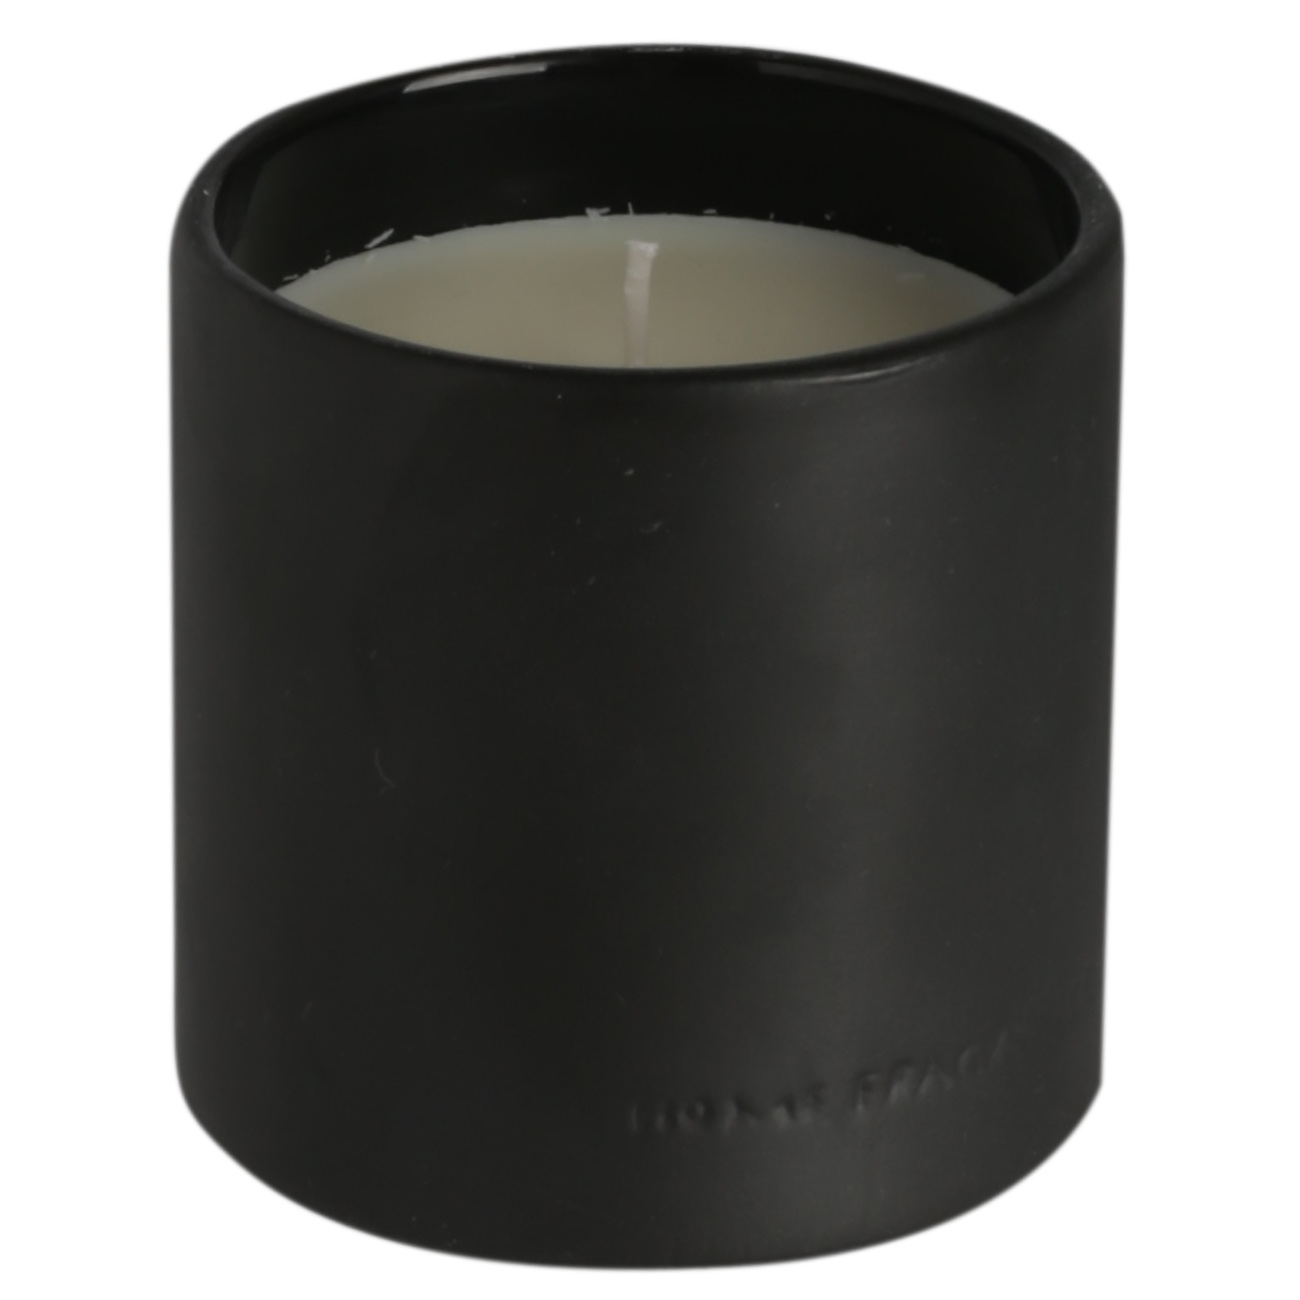 Свеча ароматическая, 9 см, в подсвечнике, керамика, черная, Black forest, B&W изображение № 2